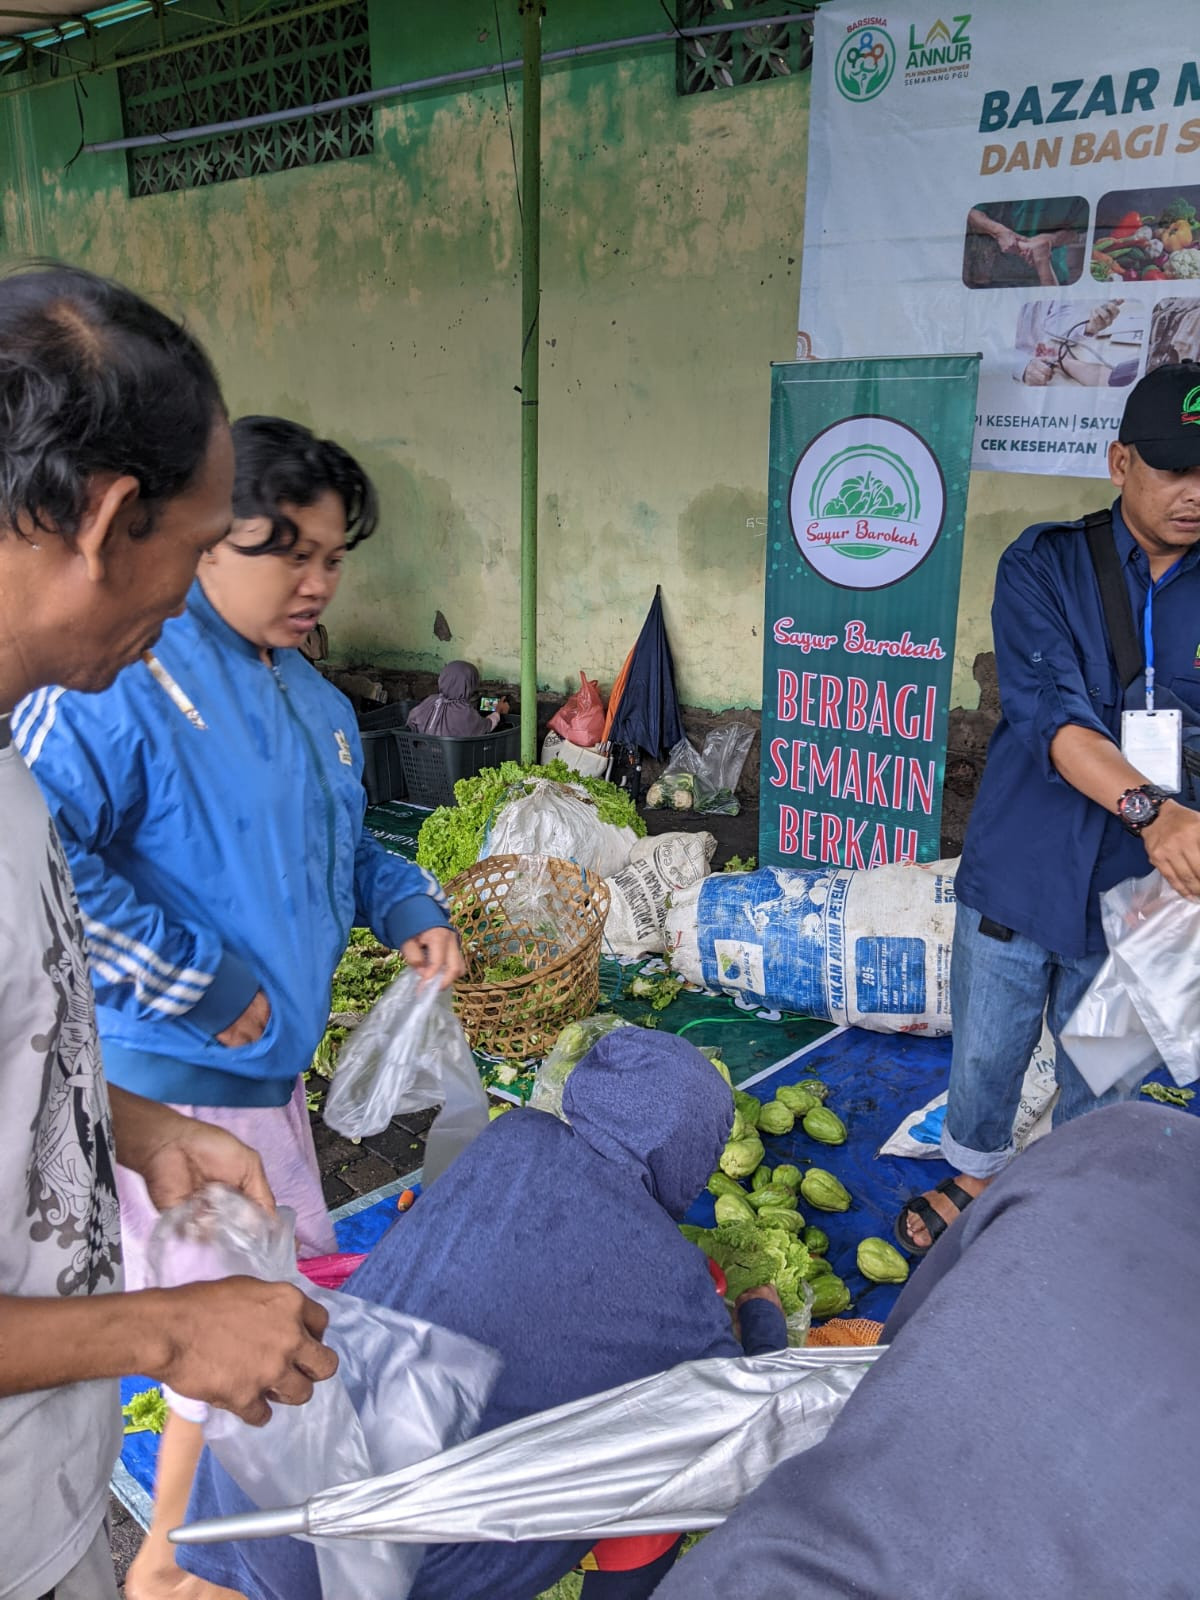 Bazar Sayuran ambil secukupnya bayar seik hlasnya